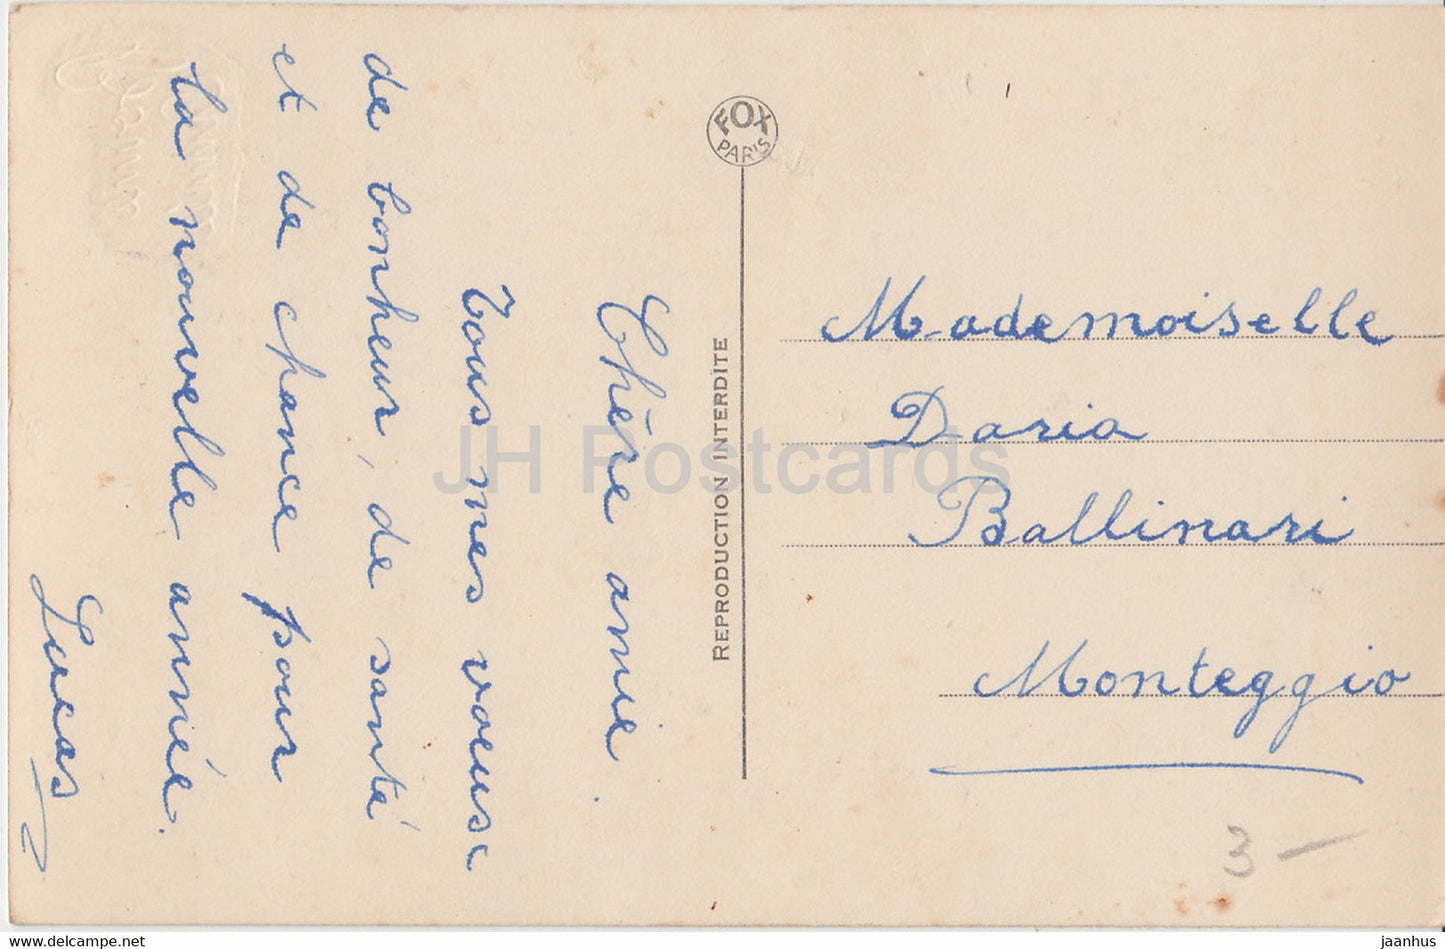 Carte de voeux Nouvel An - Bonne Annee - couple - Fox Paris 4428 - carte postale ancienne - France - occasion